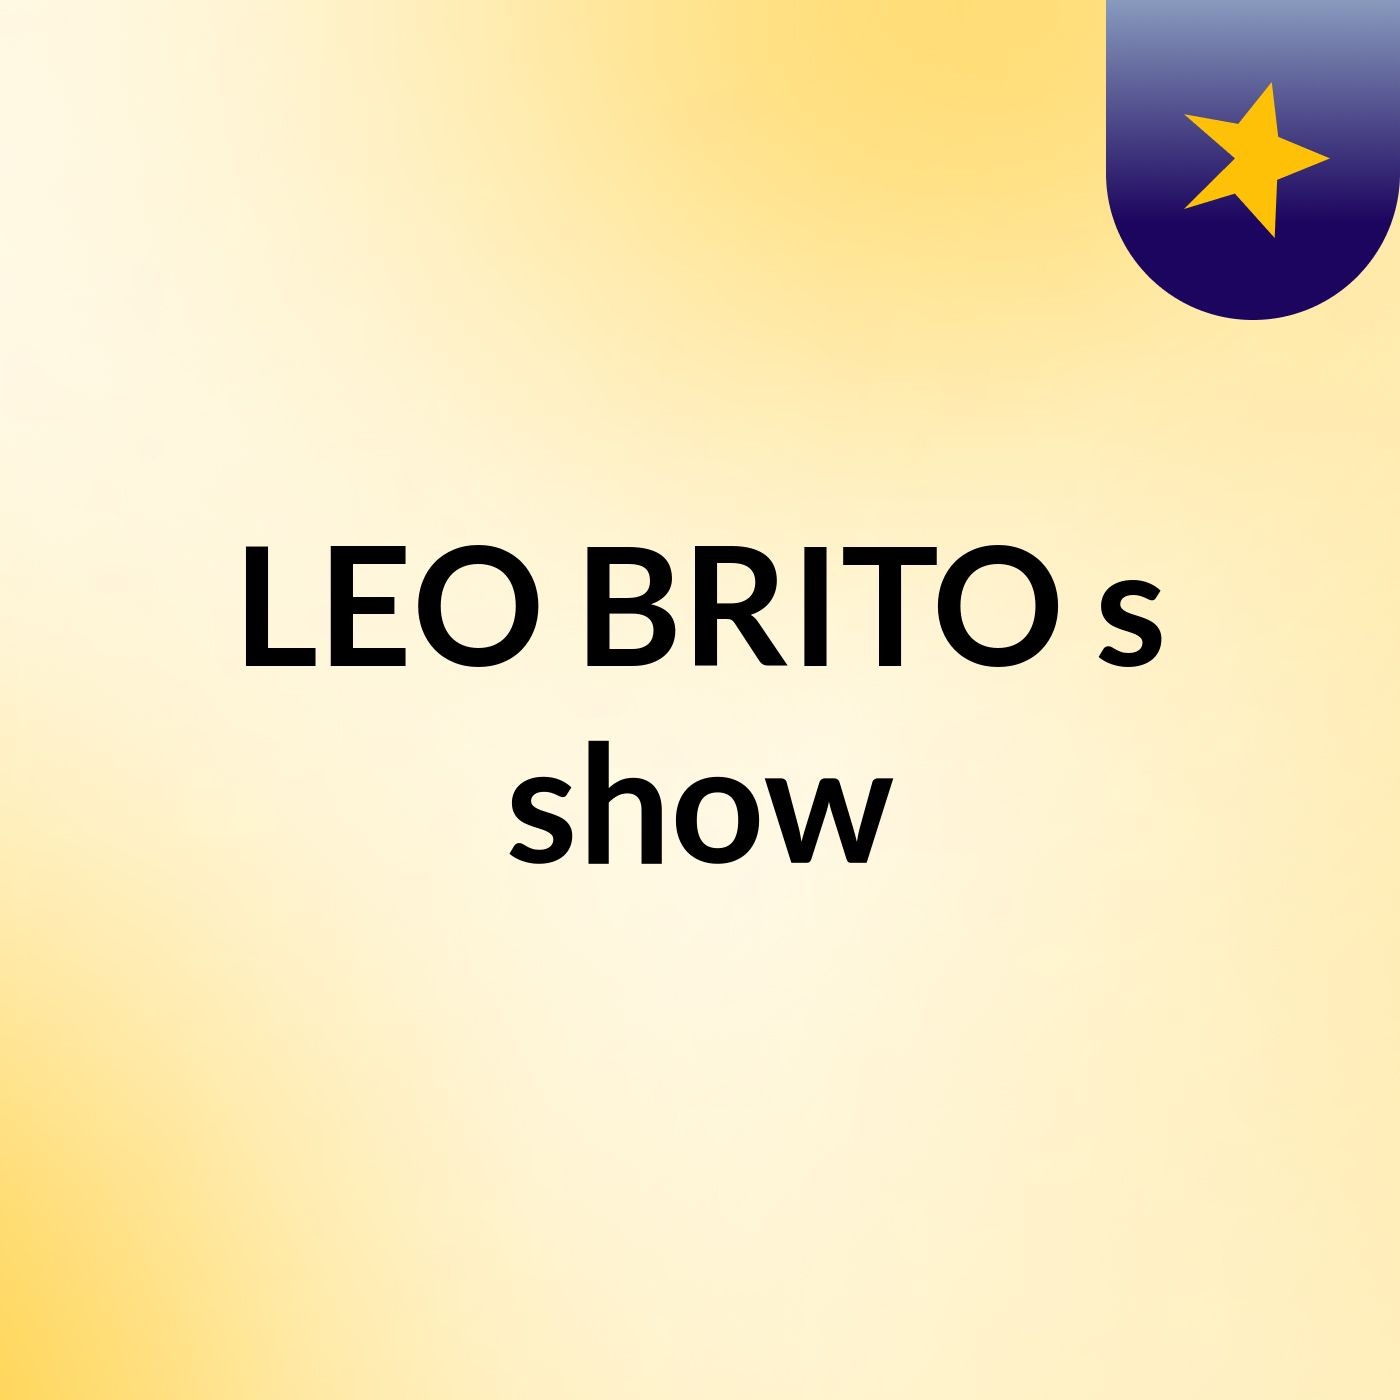 LEO BRITO's show